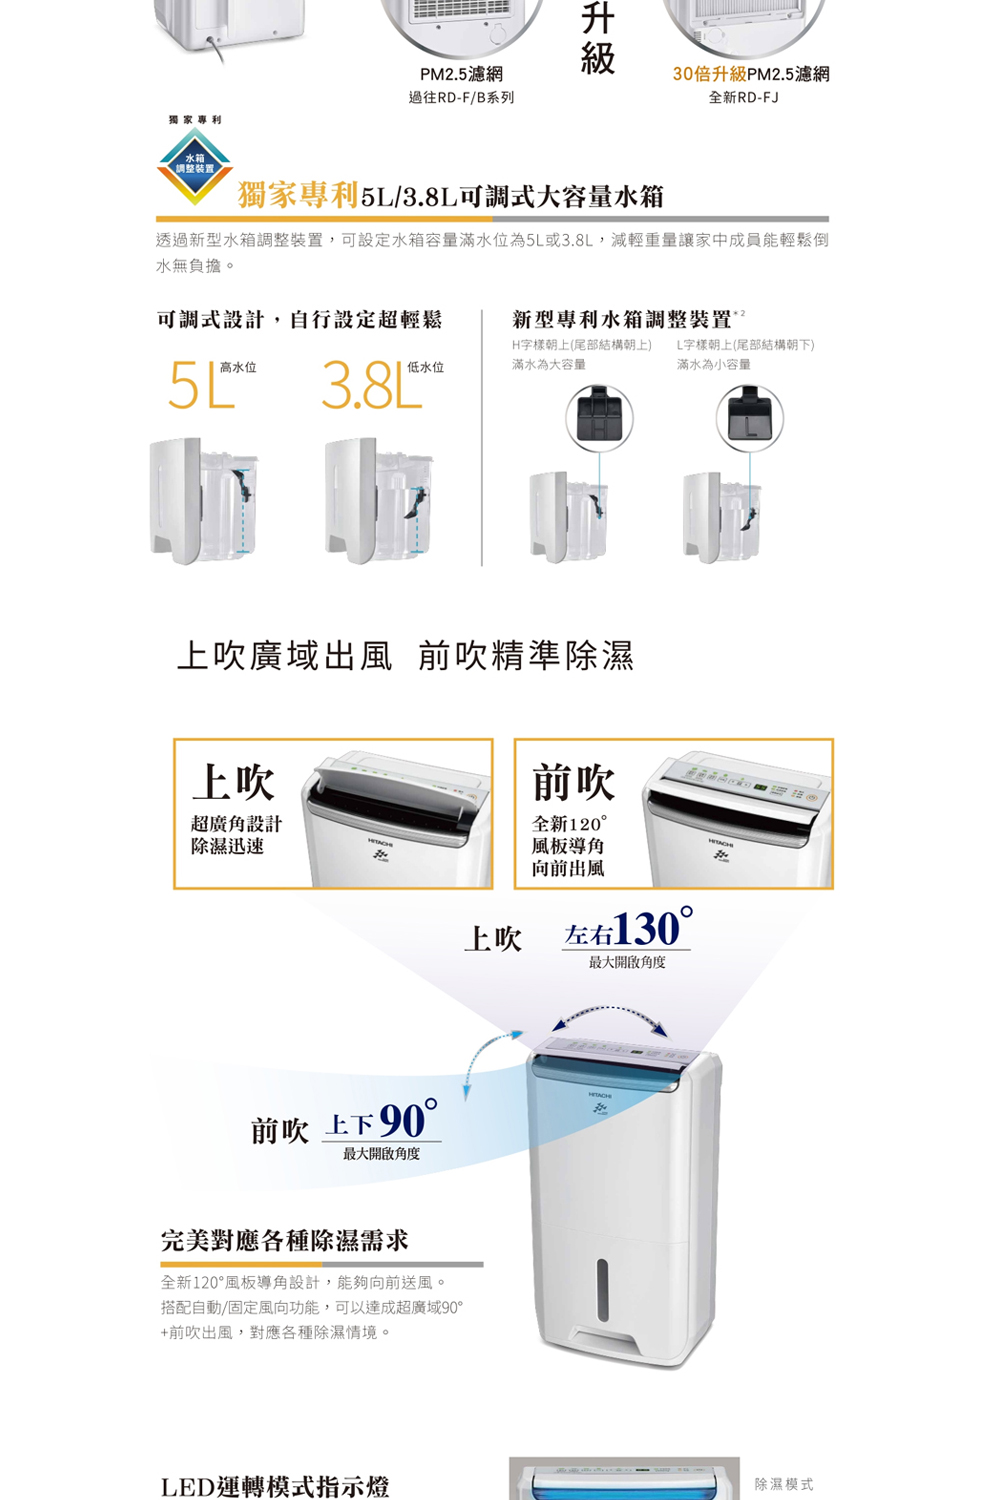 HITACHI 日立 一級能效7公升舒適節電除濕機(RD-1